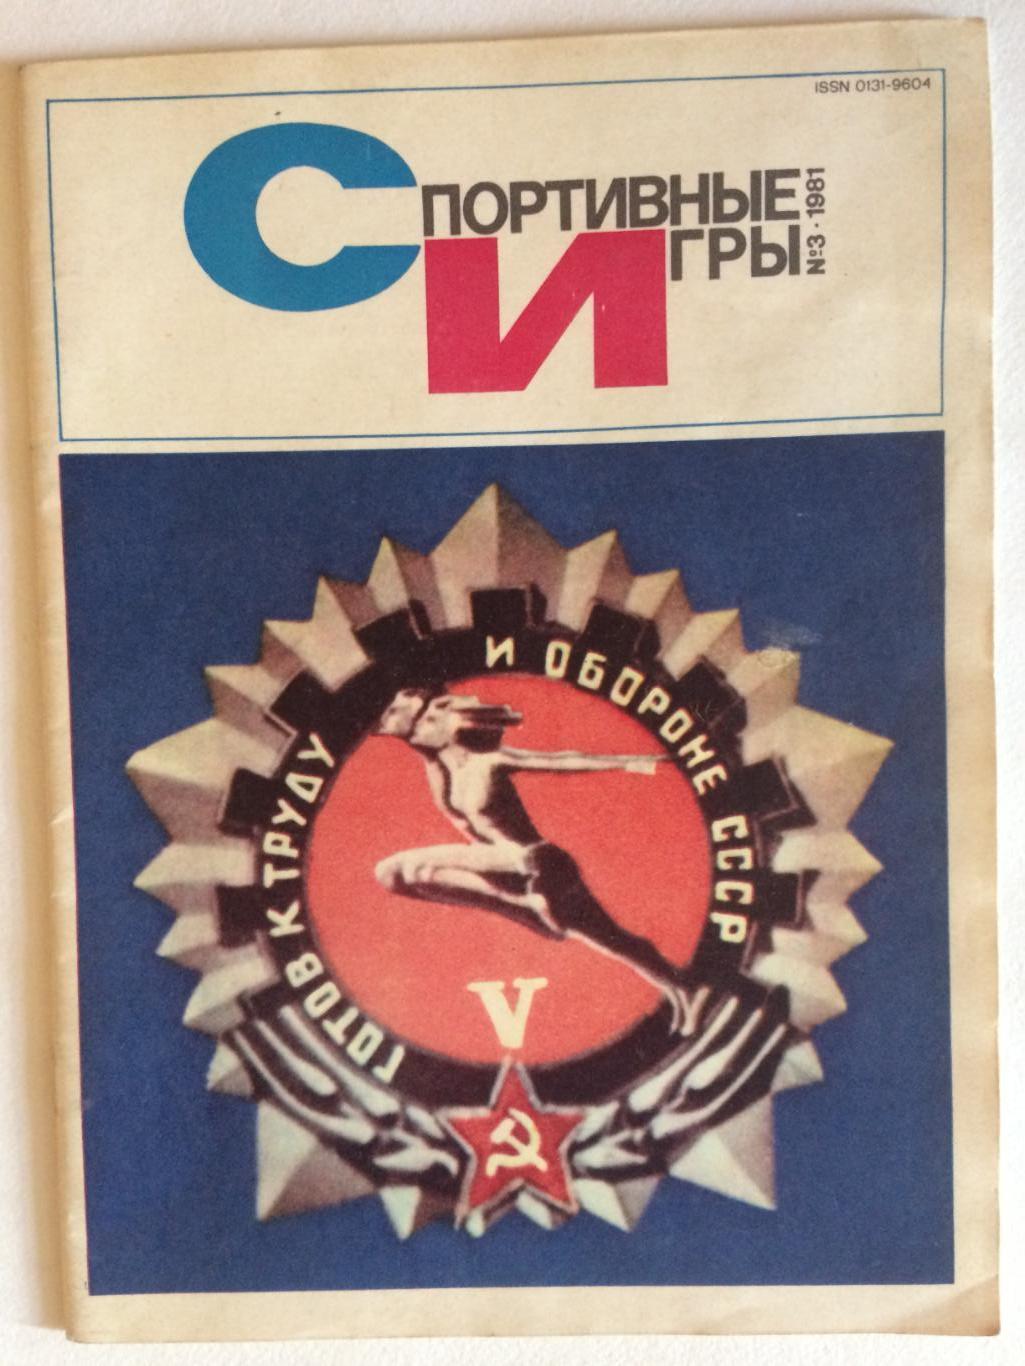 Журнал Спортивные игры №3 1981